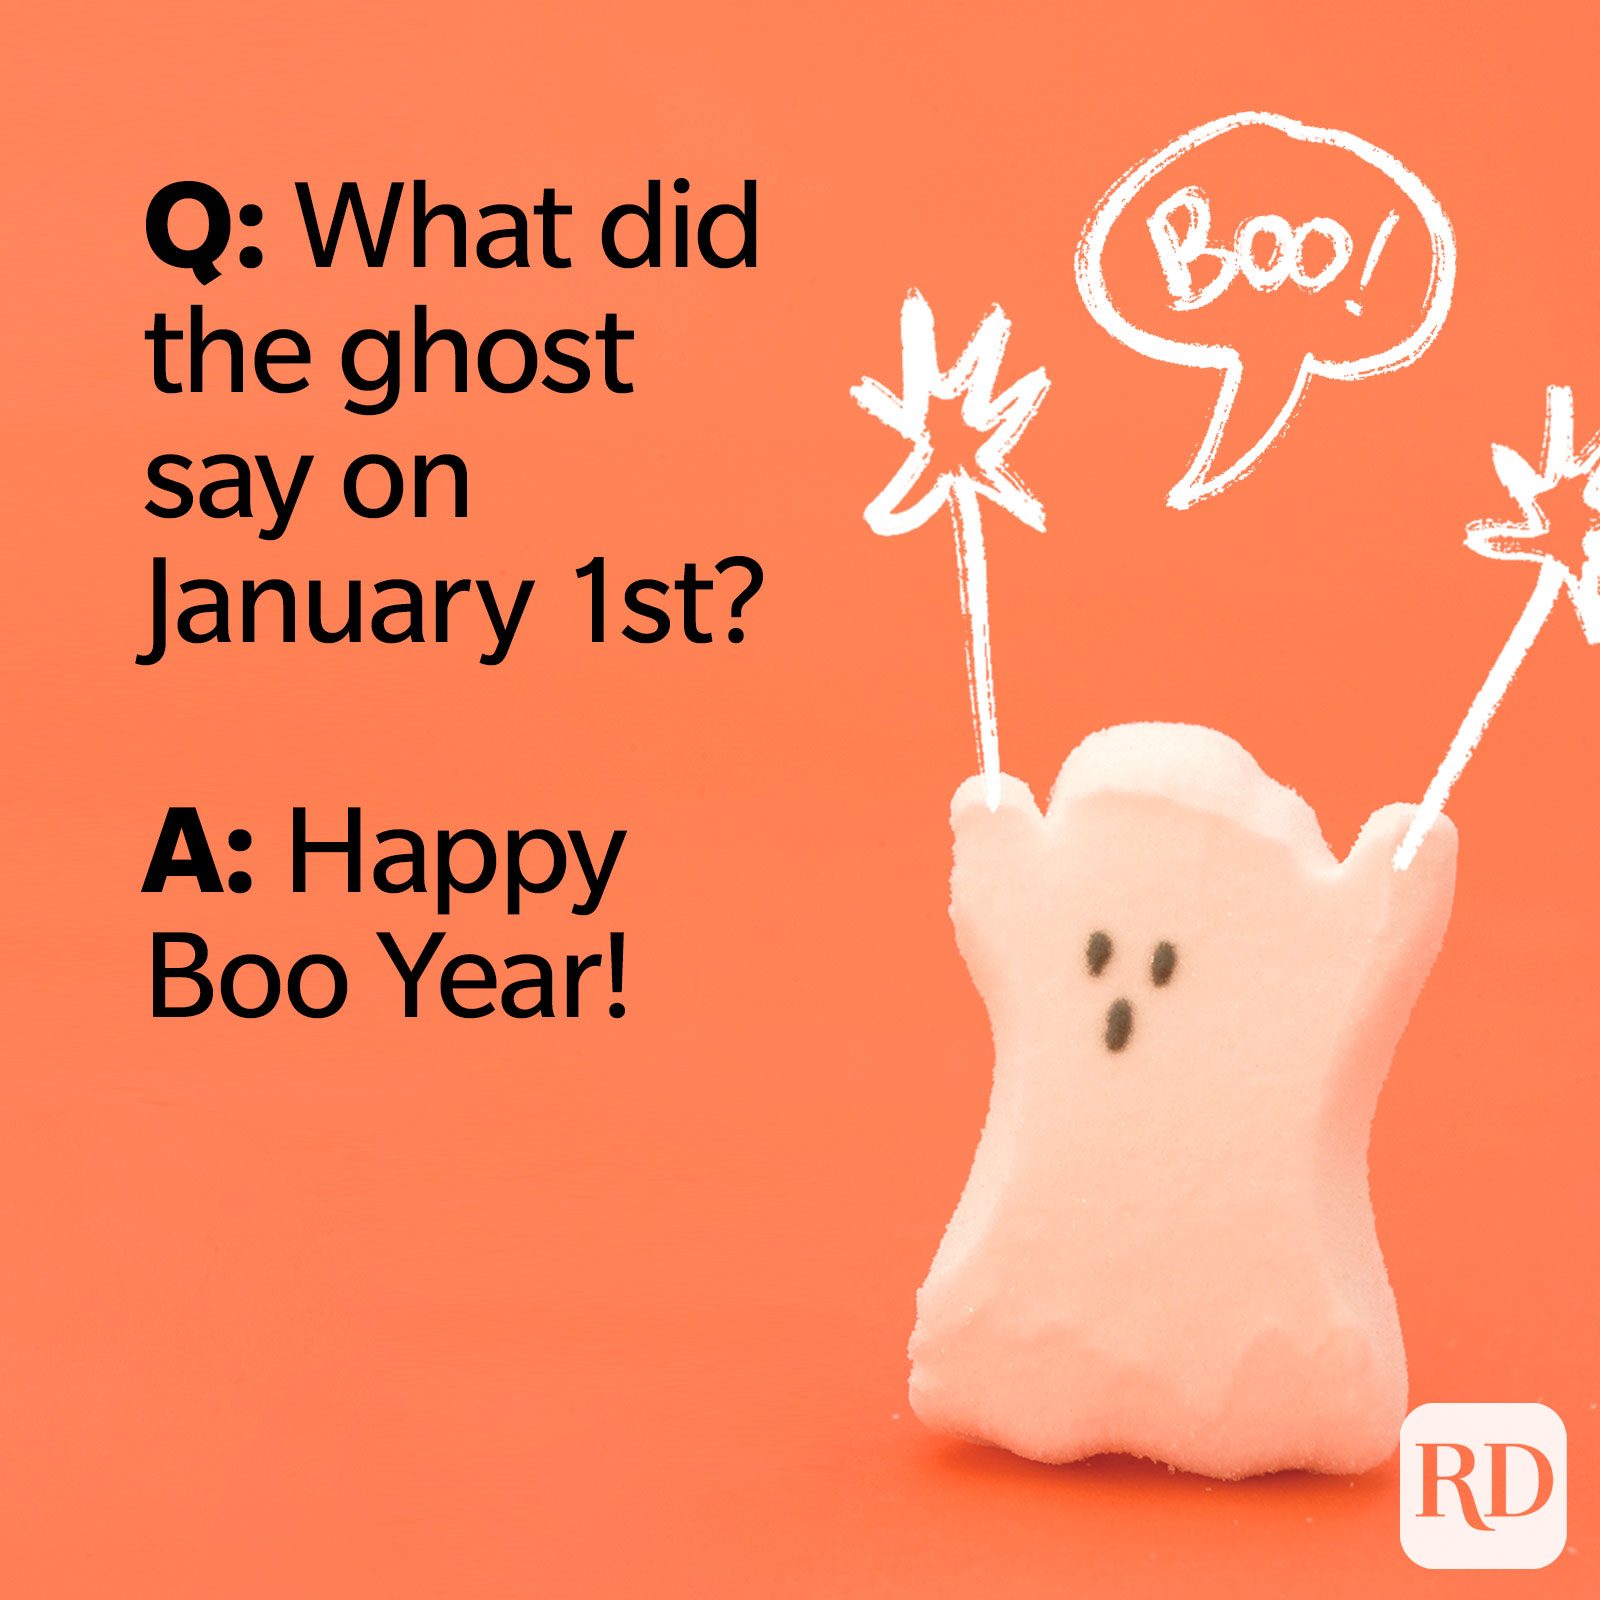 P: ¿Qué dijo el fantasma el 1 de enero? R: Feliz año Boo.